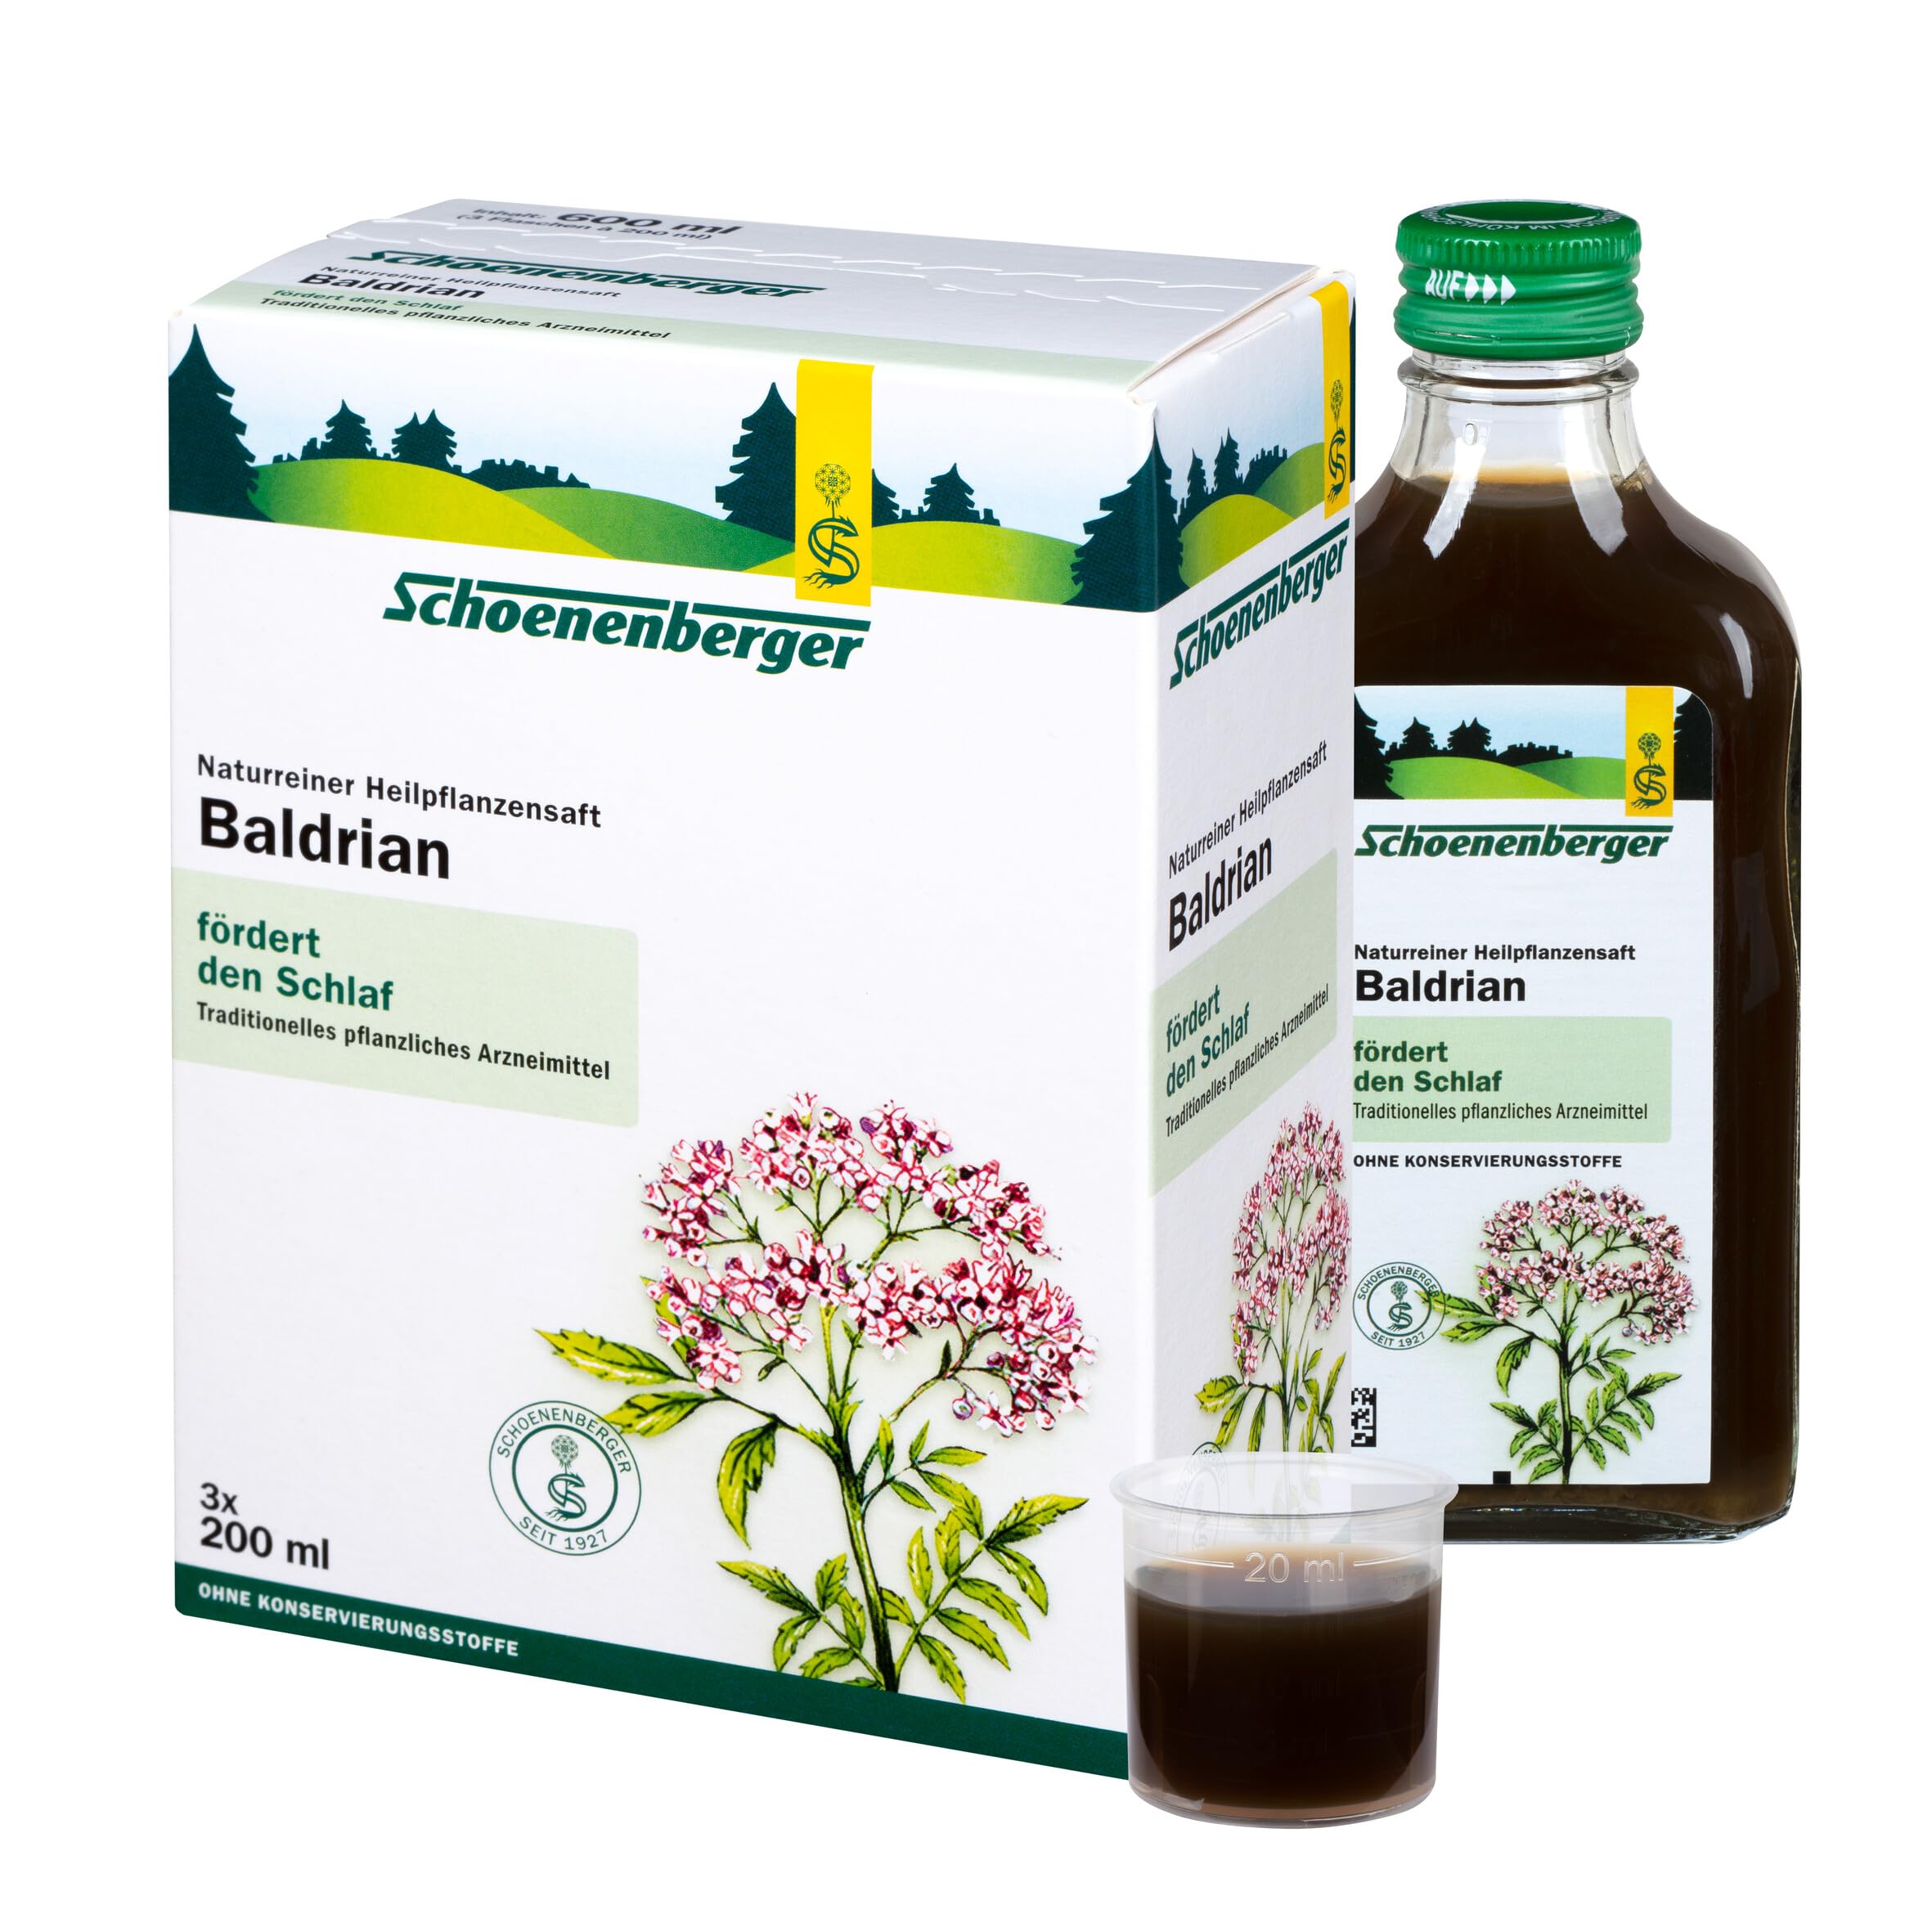 Schoenenberger - Baldrian naturreiner Heilpflanzensaft - 3x 200 ml (600 ml) Glasflaschen - fördert den Schlaf - traditionelles pflanzliches Arzneimittel